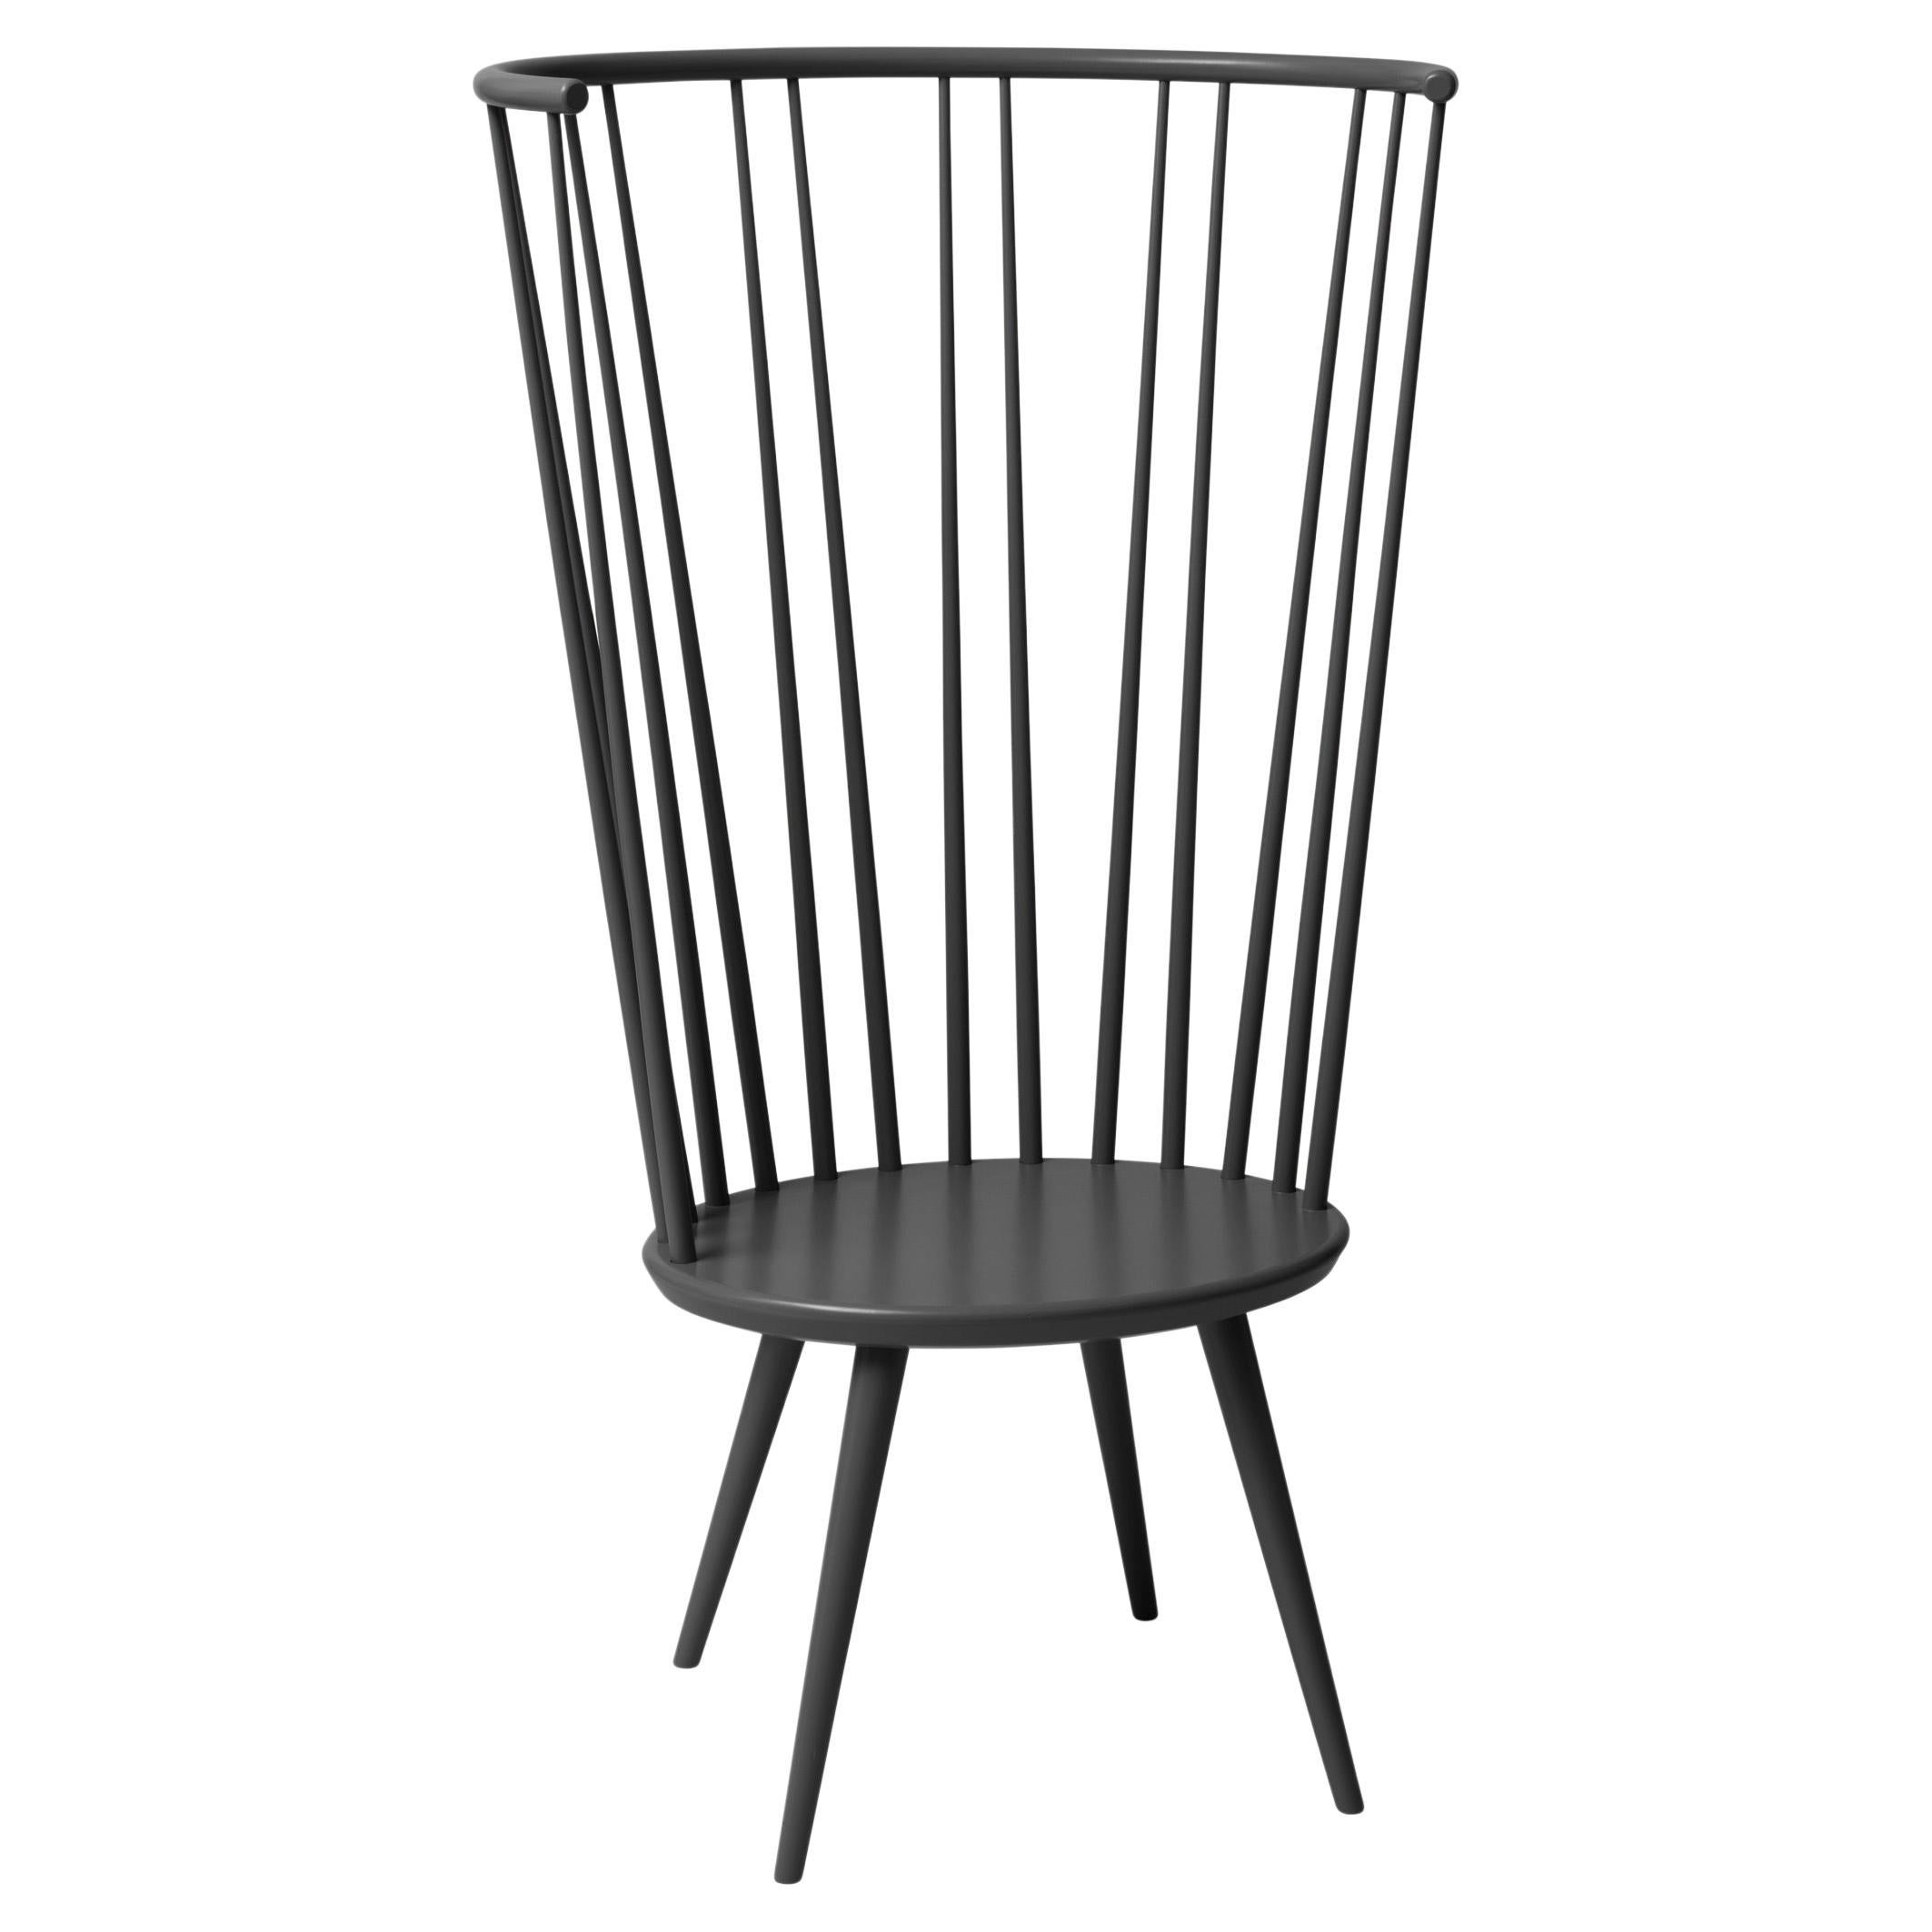 Black Storängen Birch Chair by Storängen Design